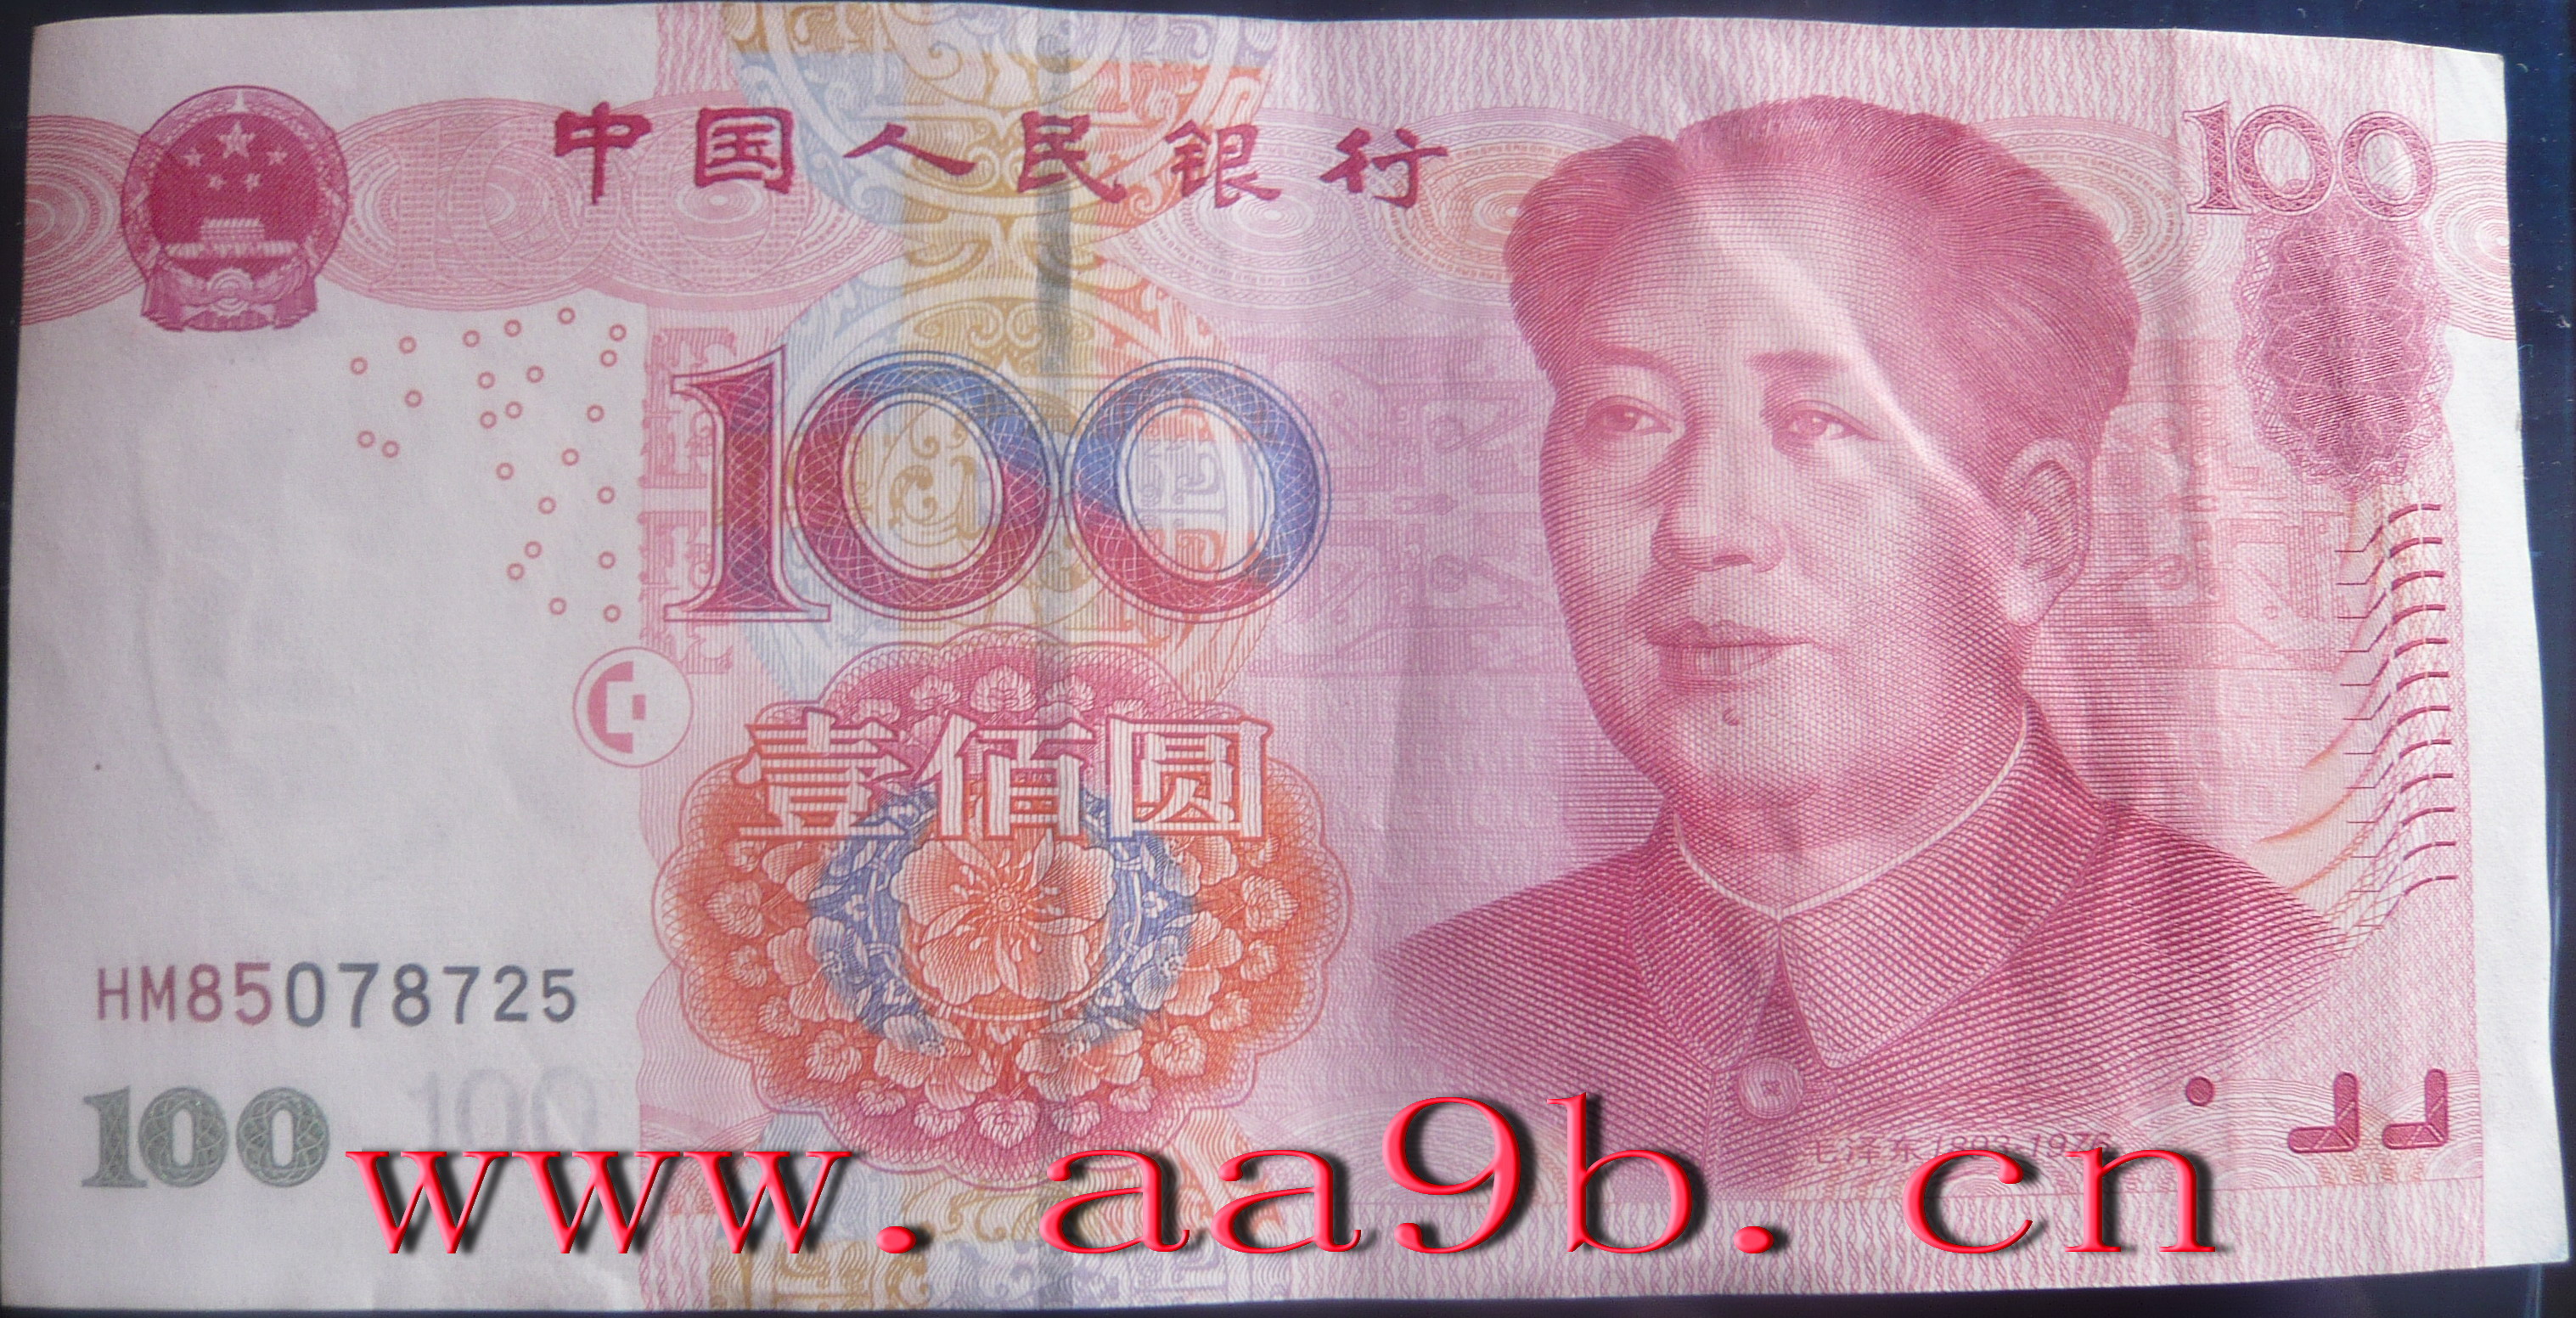 2005版100元错版人民币